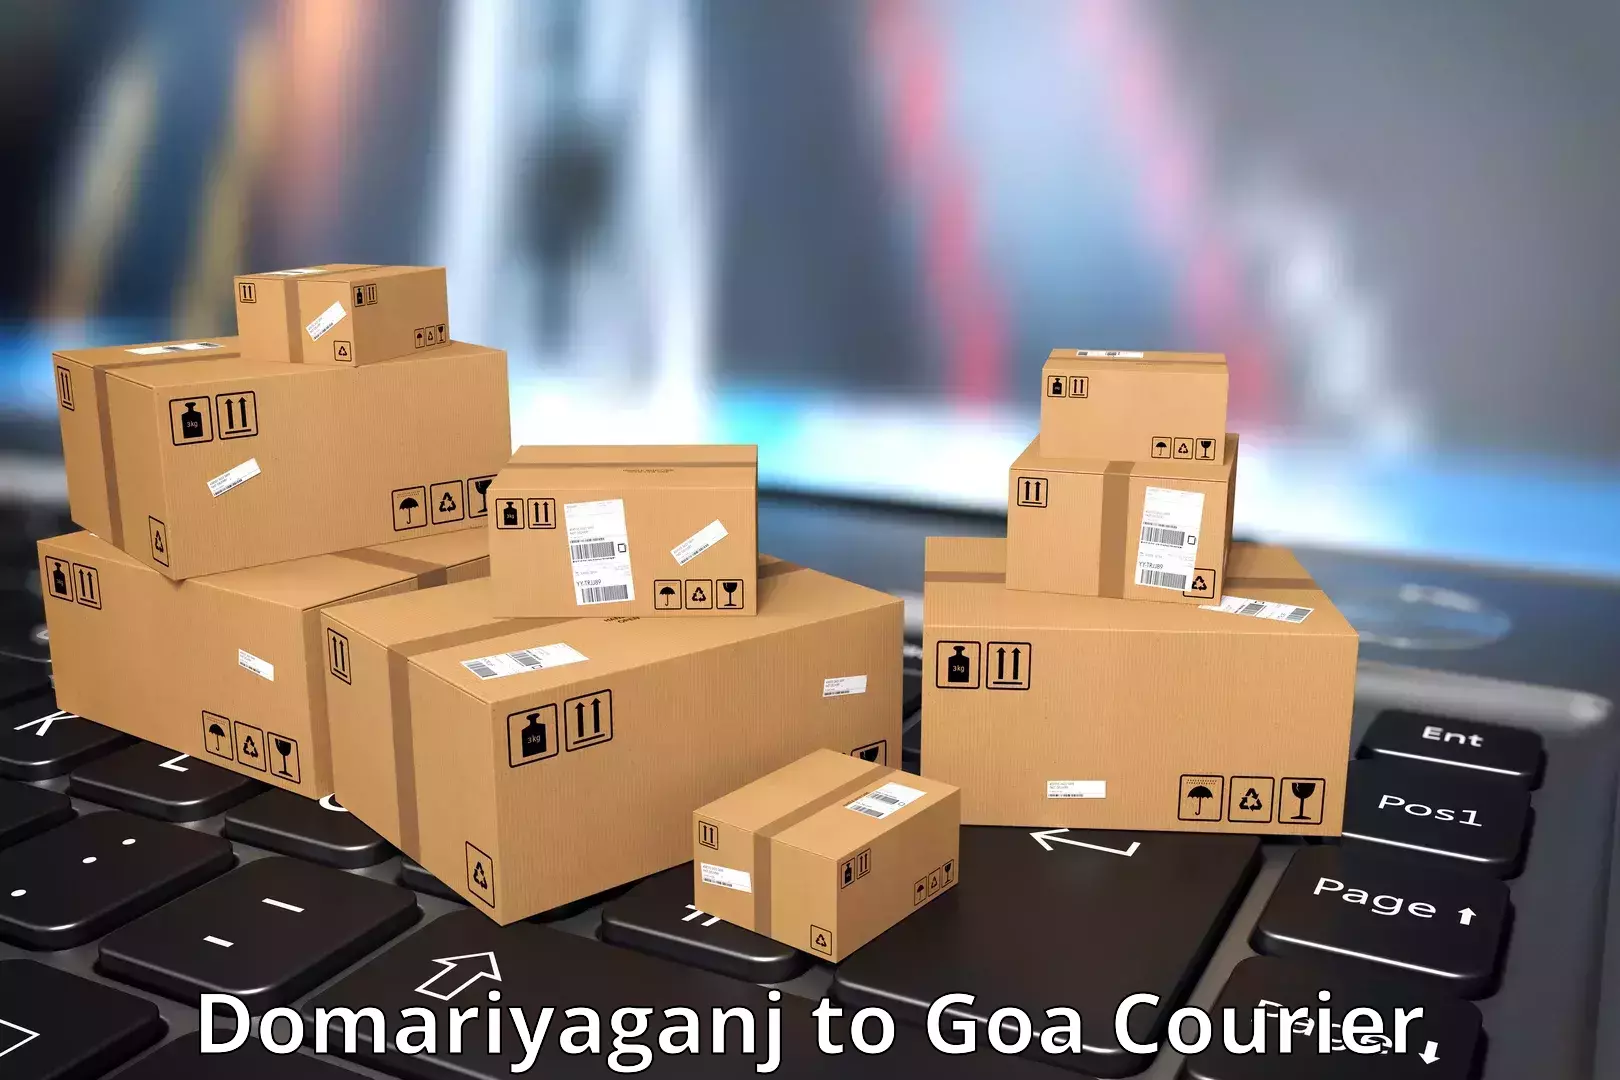 Global delivery options Domariyaganj to South Goa